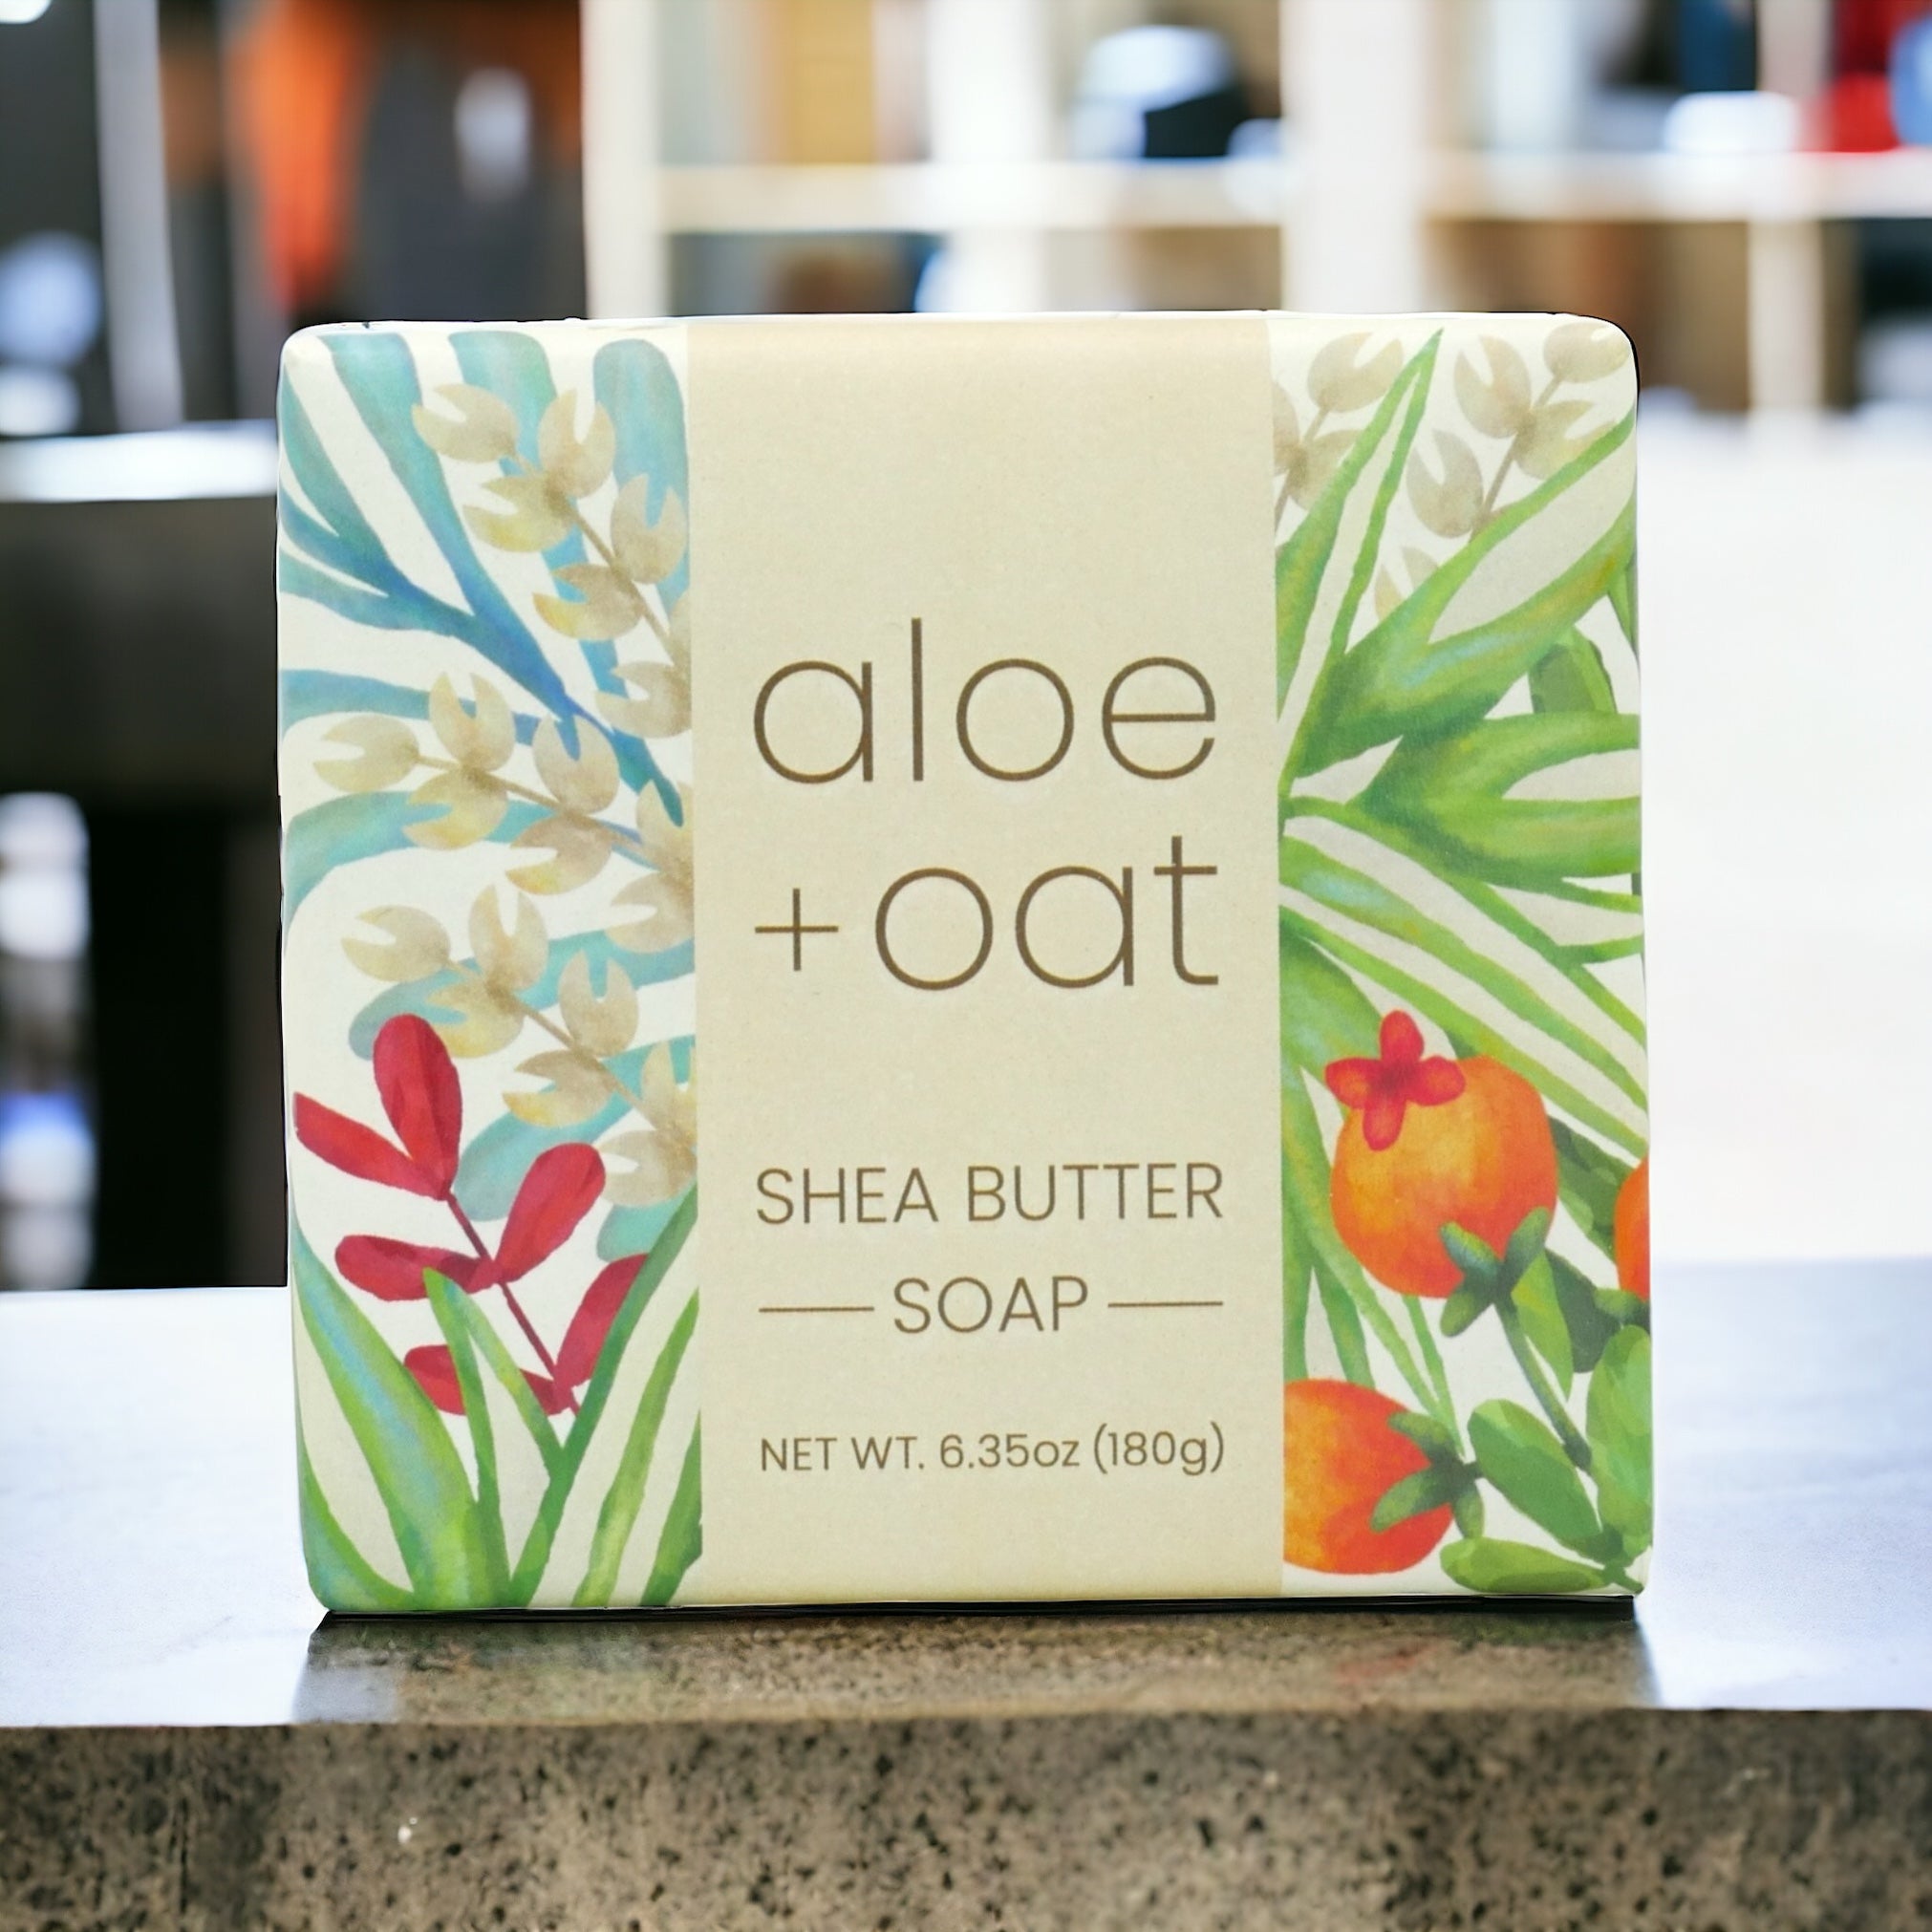 Aloe & Oat Shea Butter Soap by Greenwich Bay Trading Co.